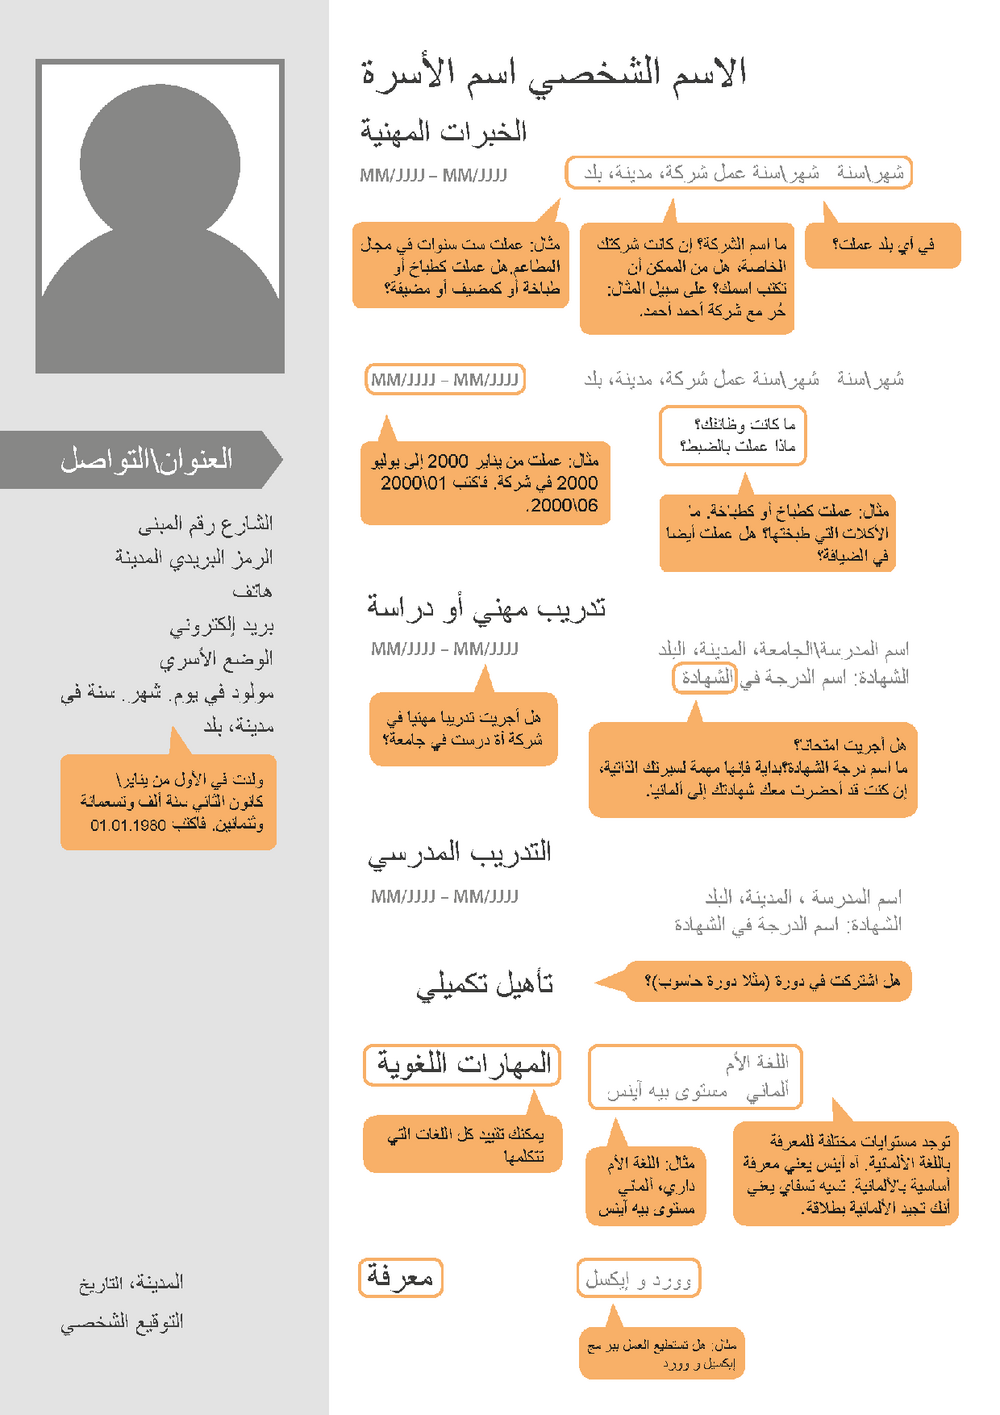 Das Bild zeigt, welche Informationen in einem Lebenslauf in Deutschland erwartet werden - auf Arabisch.